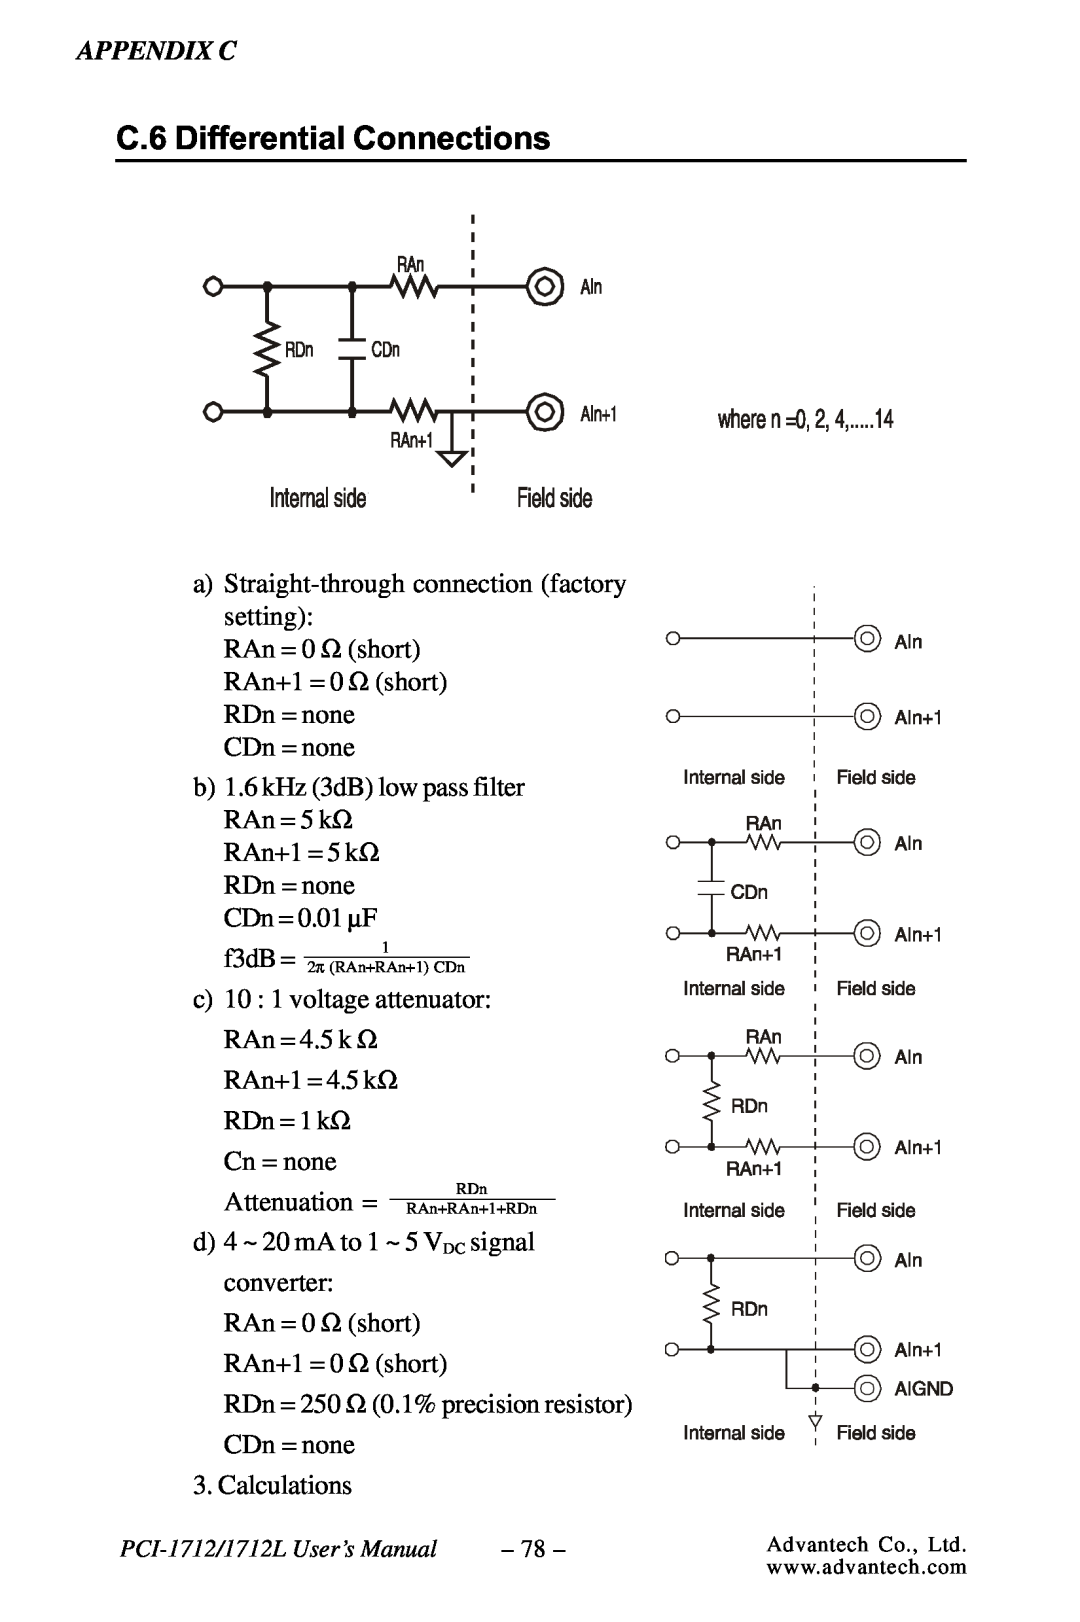 Konica Minolta PCI-1712L user manual C.6 Differential Connections, f3dB = 2π RAn+RAn+1 CDn, RDn RAn+RAn+1+RDn 